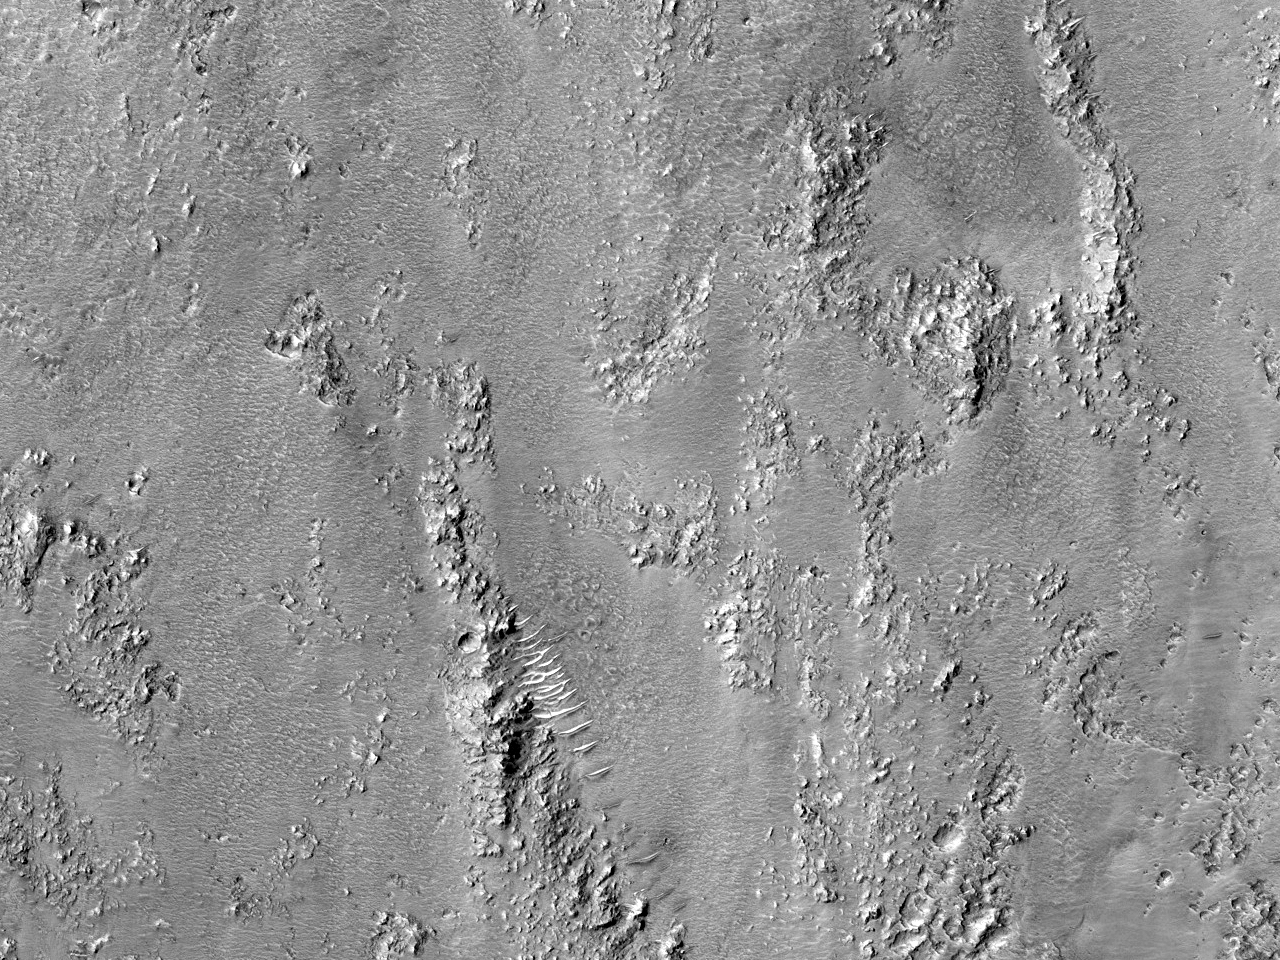 莫哈维陨石坑是火星被诸如小行星与彗星撞击过的重要证据。(Mojave Crater)